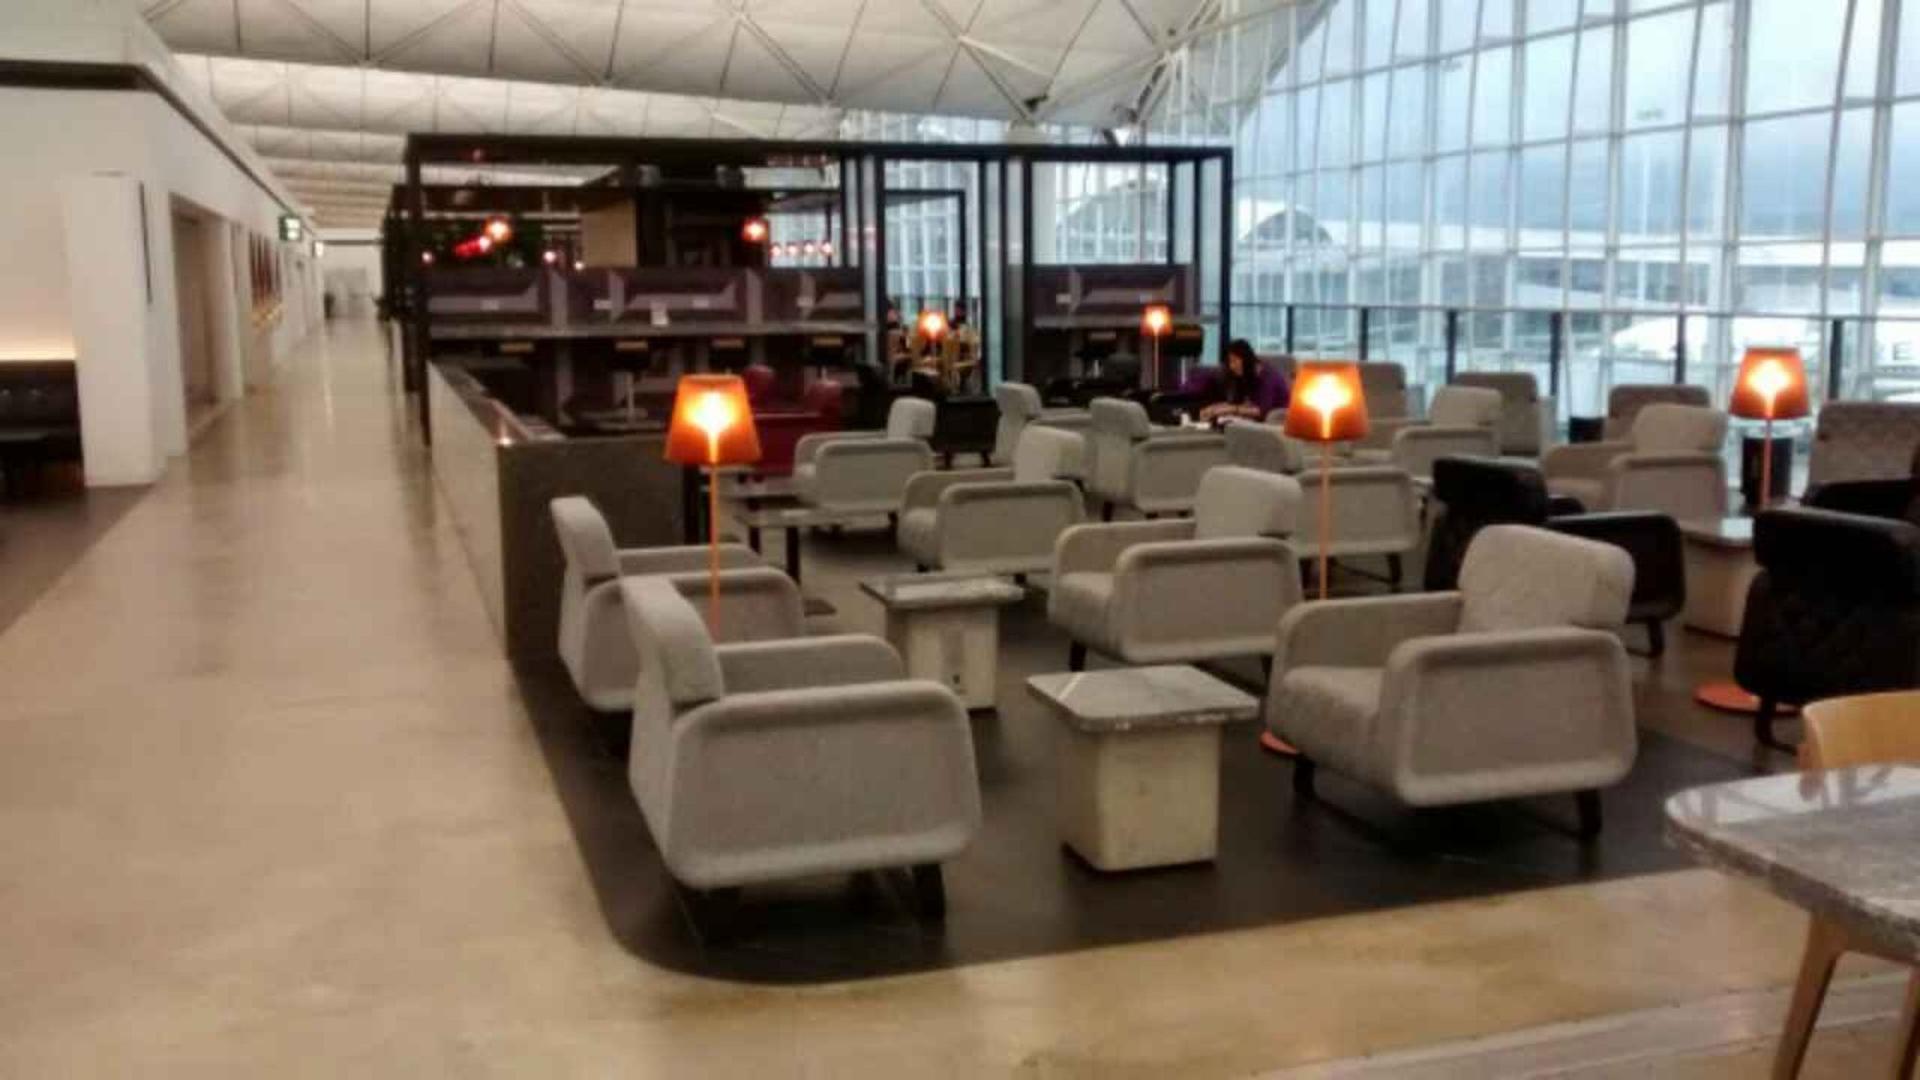 The Qantas Hong Kong Lounge image 37 of 99